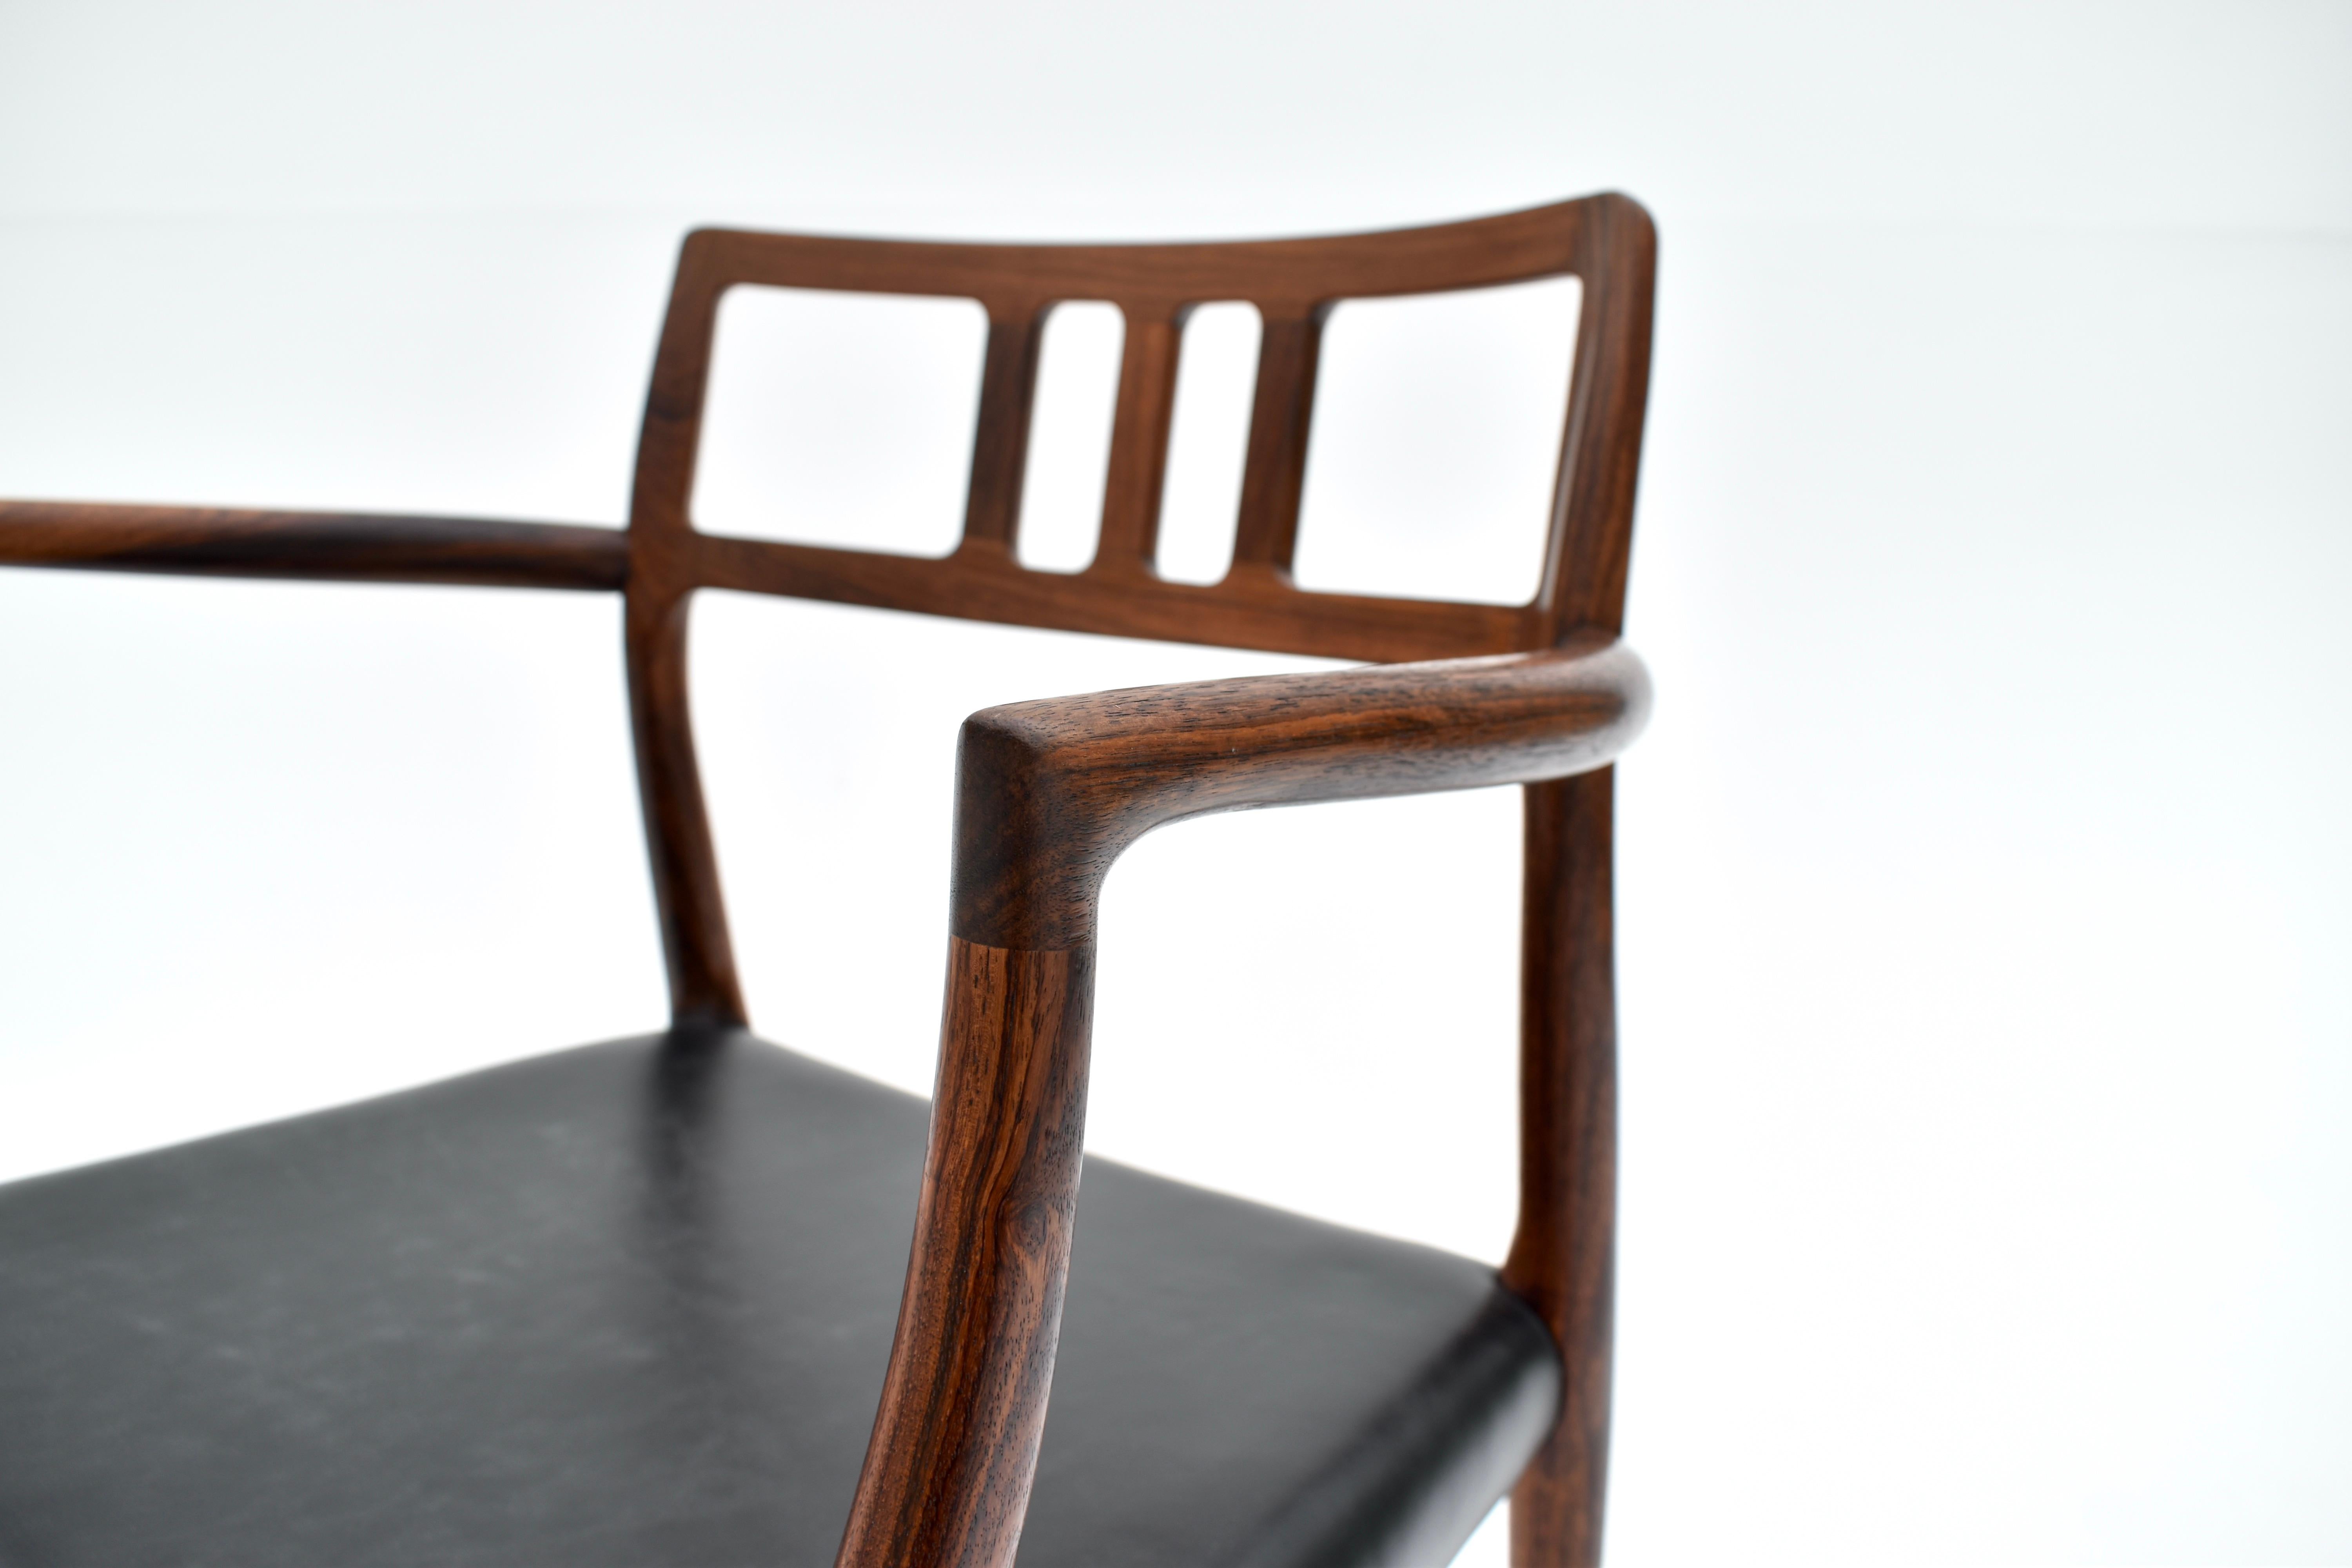 Sessel aus massivem Palisanderholz und schwarzem Leder, entworfen von Niels Moller 1966 für J L Mollers Mobelfabrik.

Ein sehr begehrter und seltener Stuhl. Dieser dänische Designklassiker ist ein Musterbeispiel für die handwerkliche Kunstfertigkeit